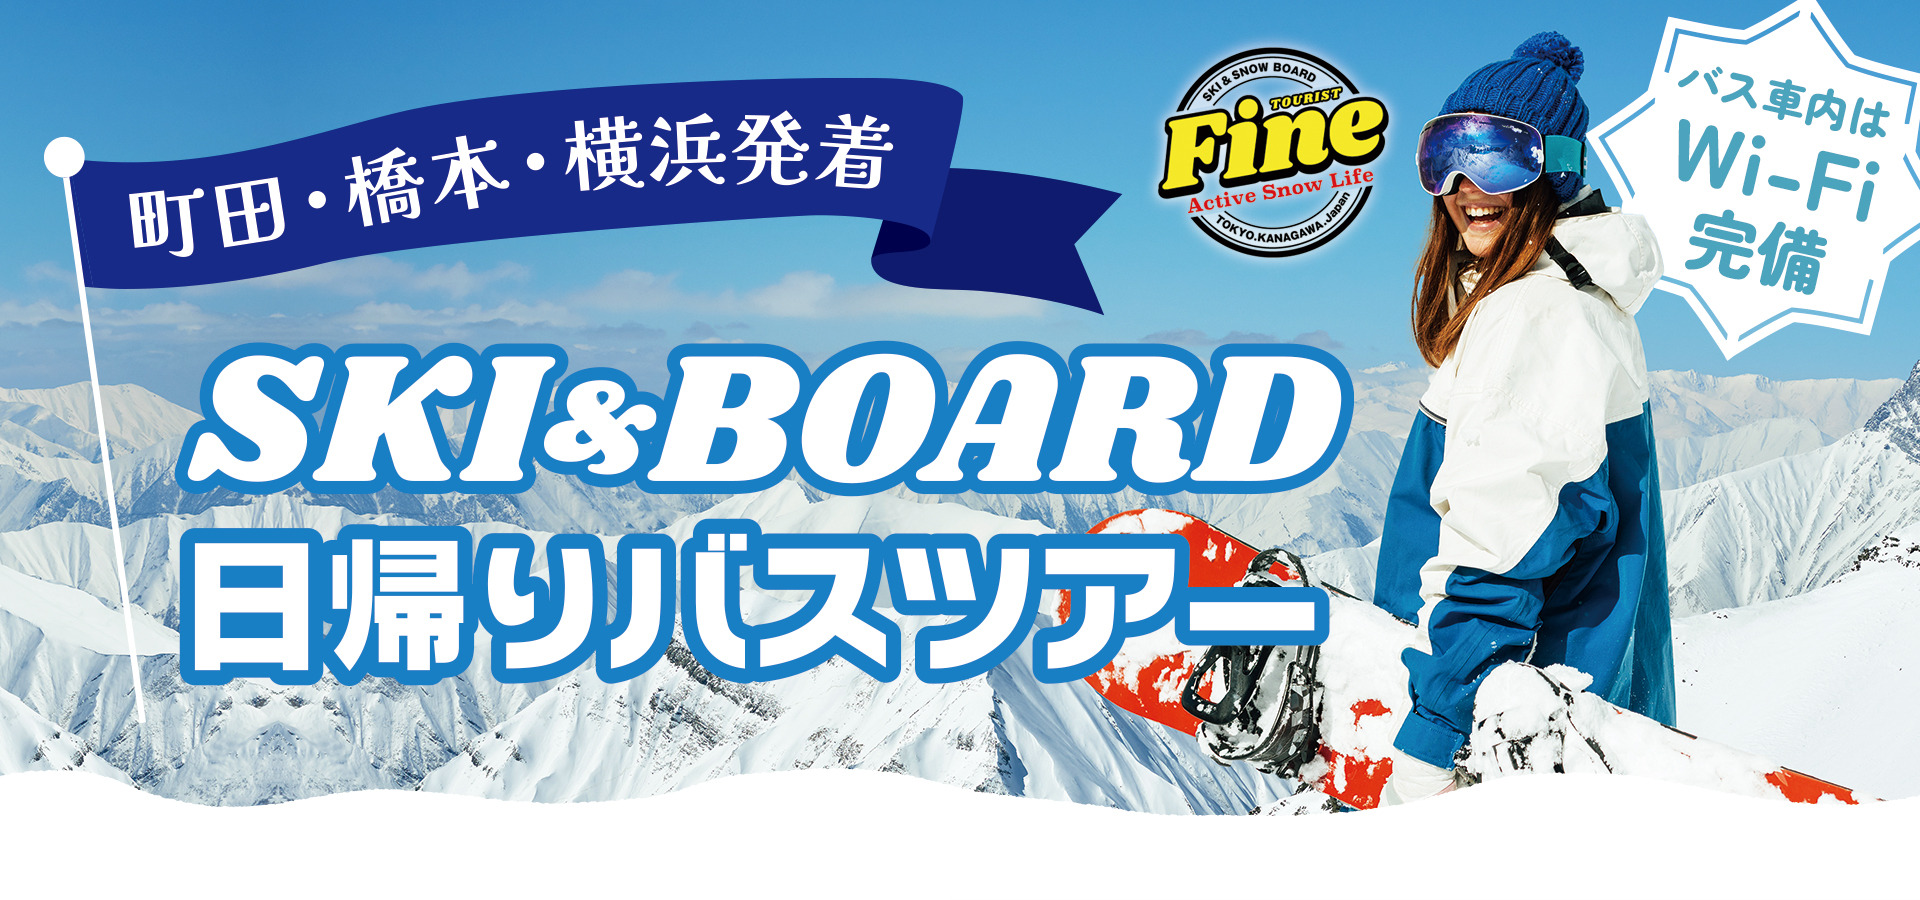 横浜・町田・橋本発着 富士見パノラマスキー場 スキー・スノーボード バスツアー